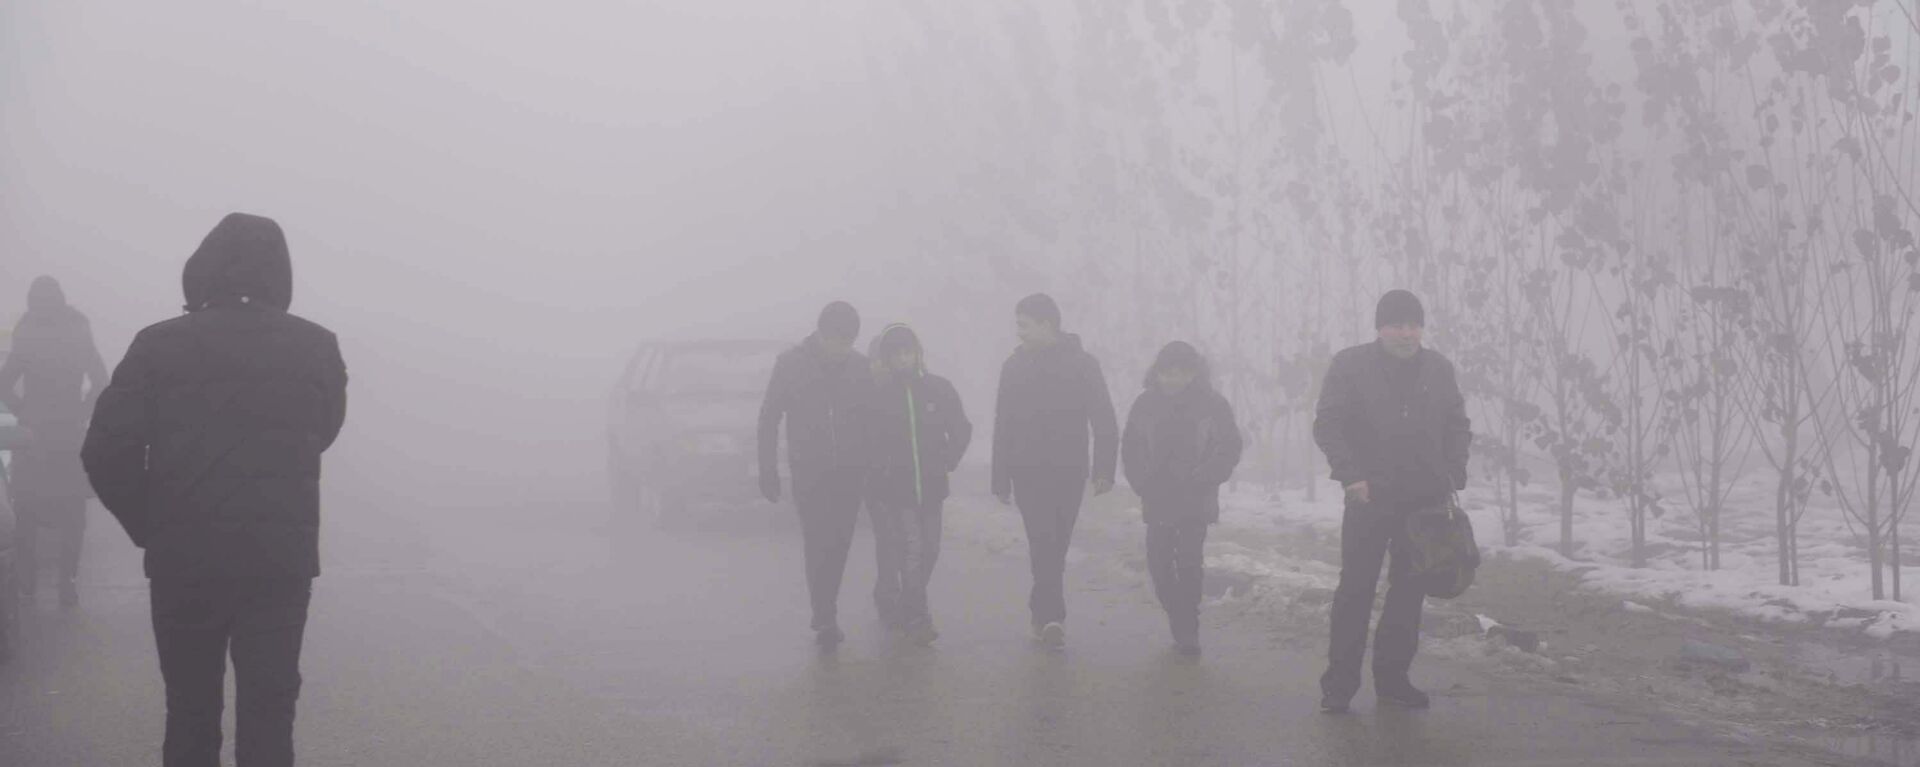 Туман в Душанбе, архивное фото - Sputnik Тоҷикистон, 1920, 01.04.2021